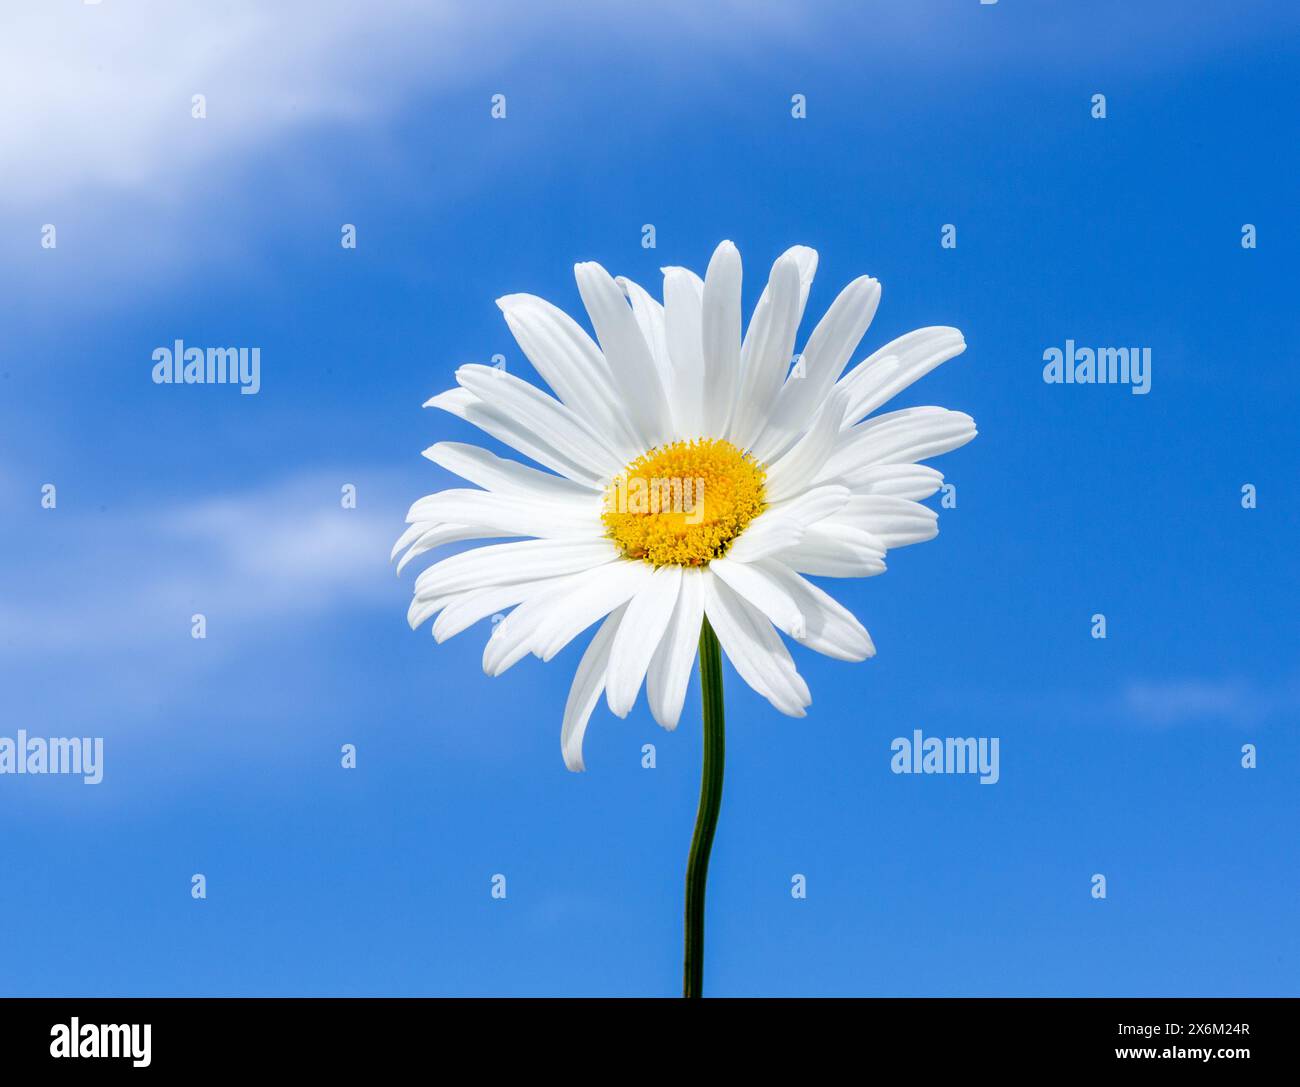 Fiori di camomilla soleggiati contro un cielo blu. Margherita bianca (Marguerite) Foto Stock